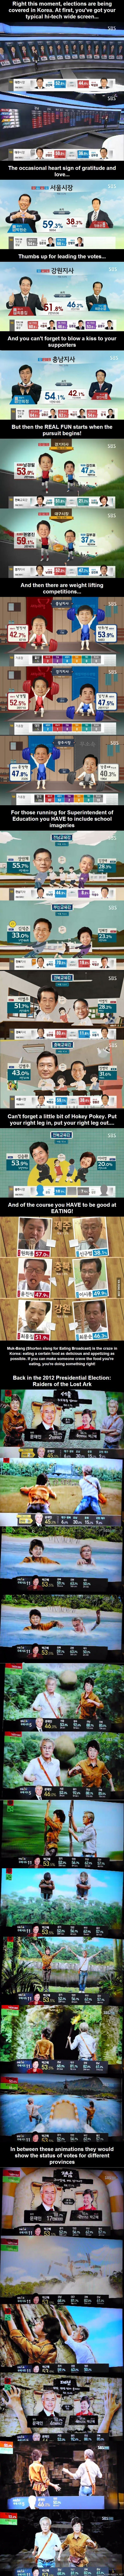 Vaalit Koreassa - Tylsät diagrammit ja kaaviot ovat jääneet taka-alalle kun äänestysprosentit voidaan esittää huomattavasti hauskemmalla tavalla!